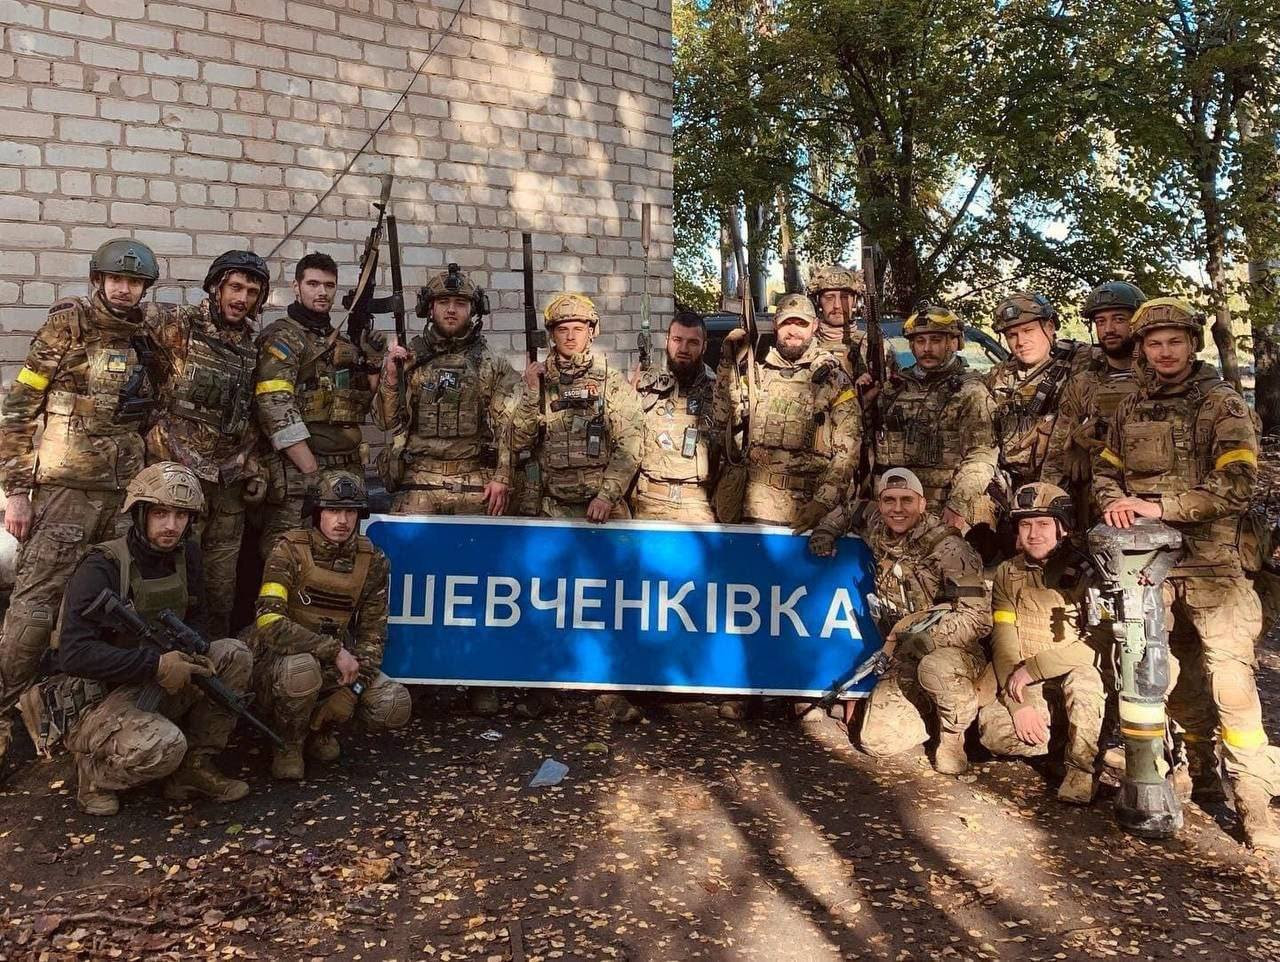 Vývoj bojů: Rusové prchají u Dněpru, Ukrajinci tu mají převahu ve všem, píše ruský bloger